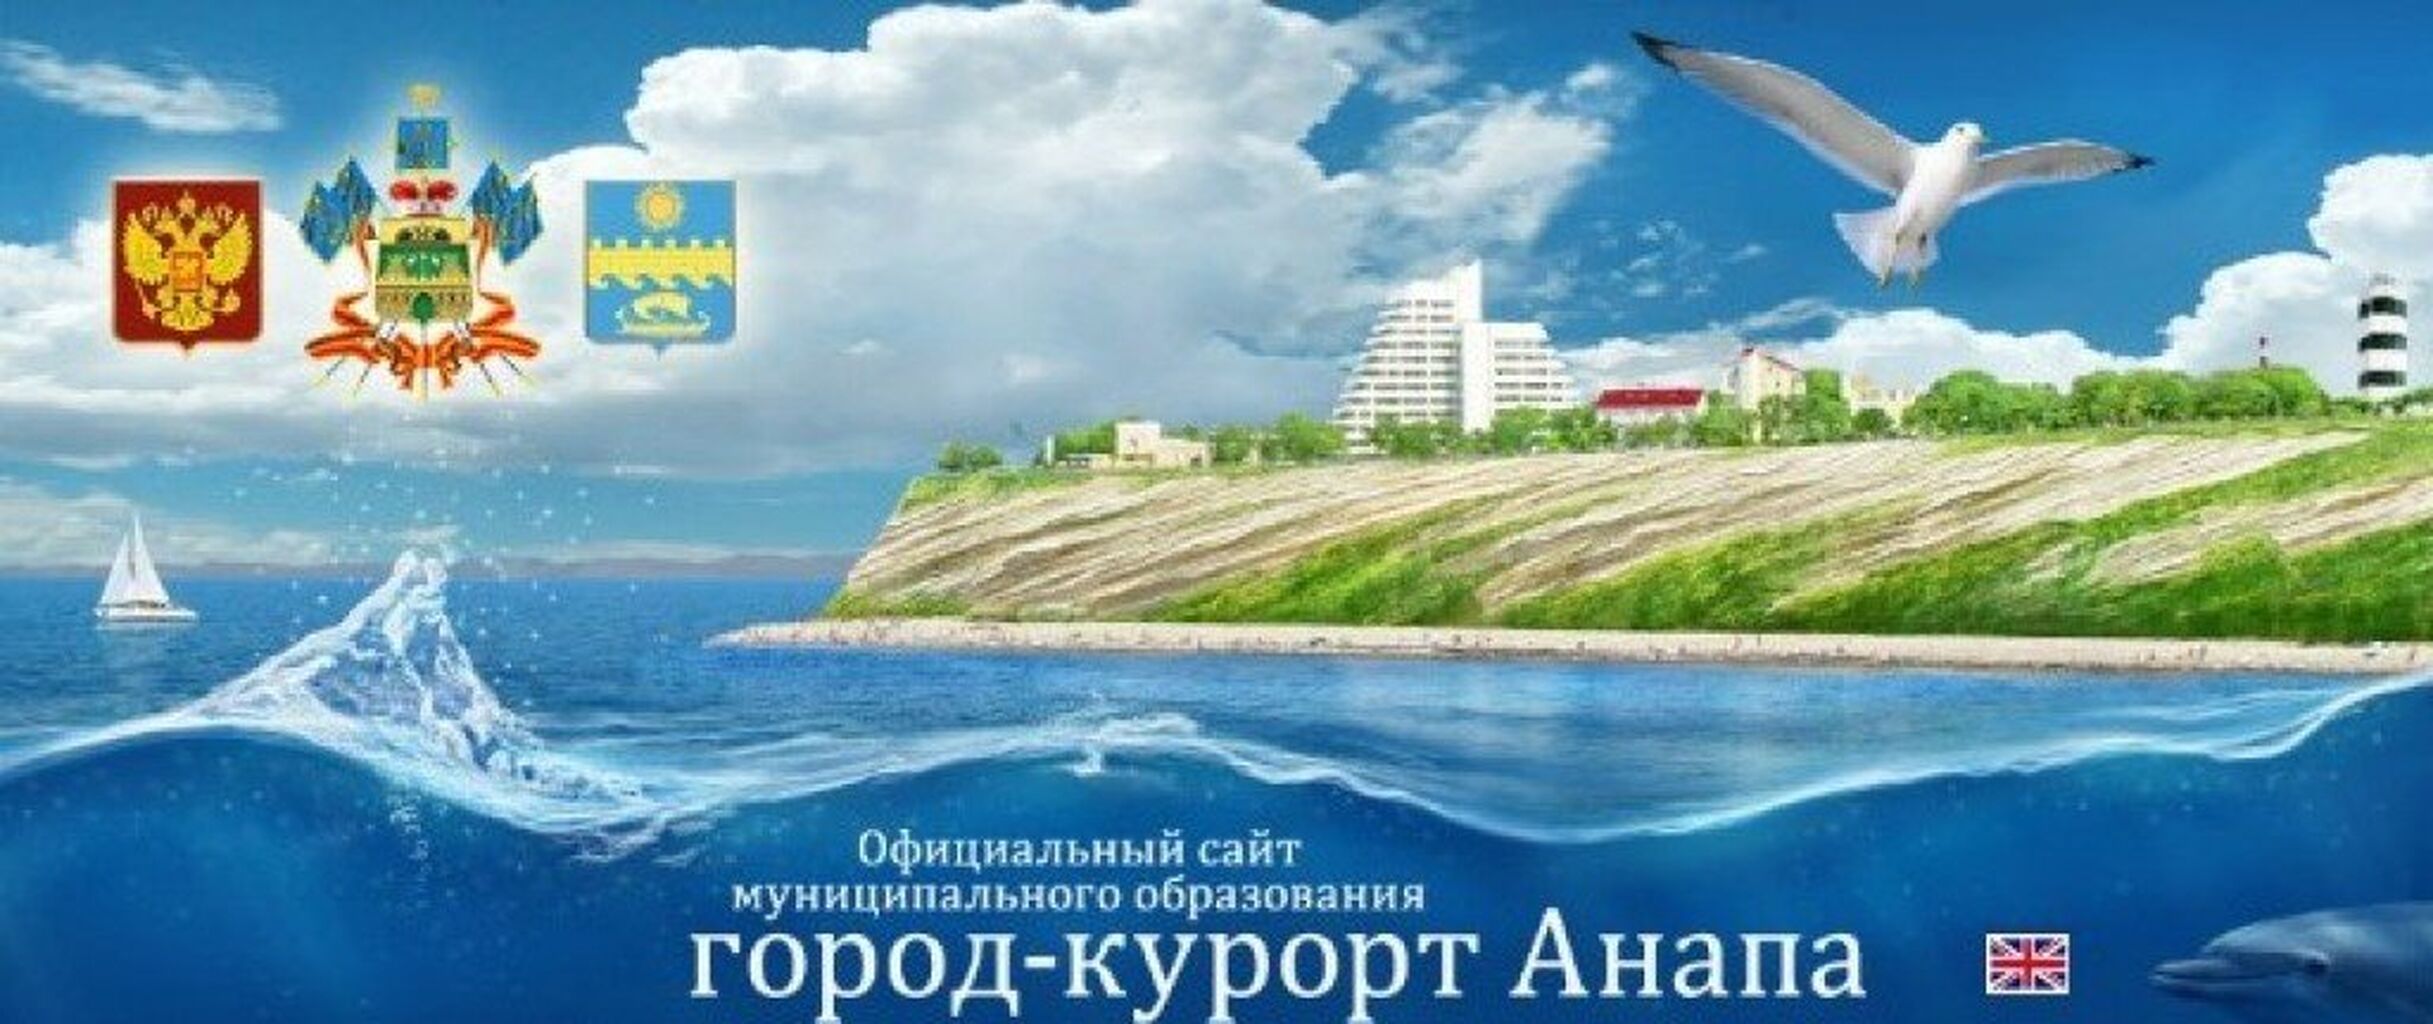 Администрации муниципального образования город-курорт Анапа